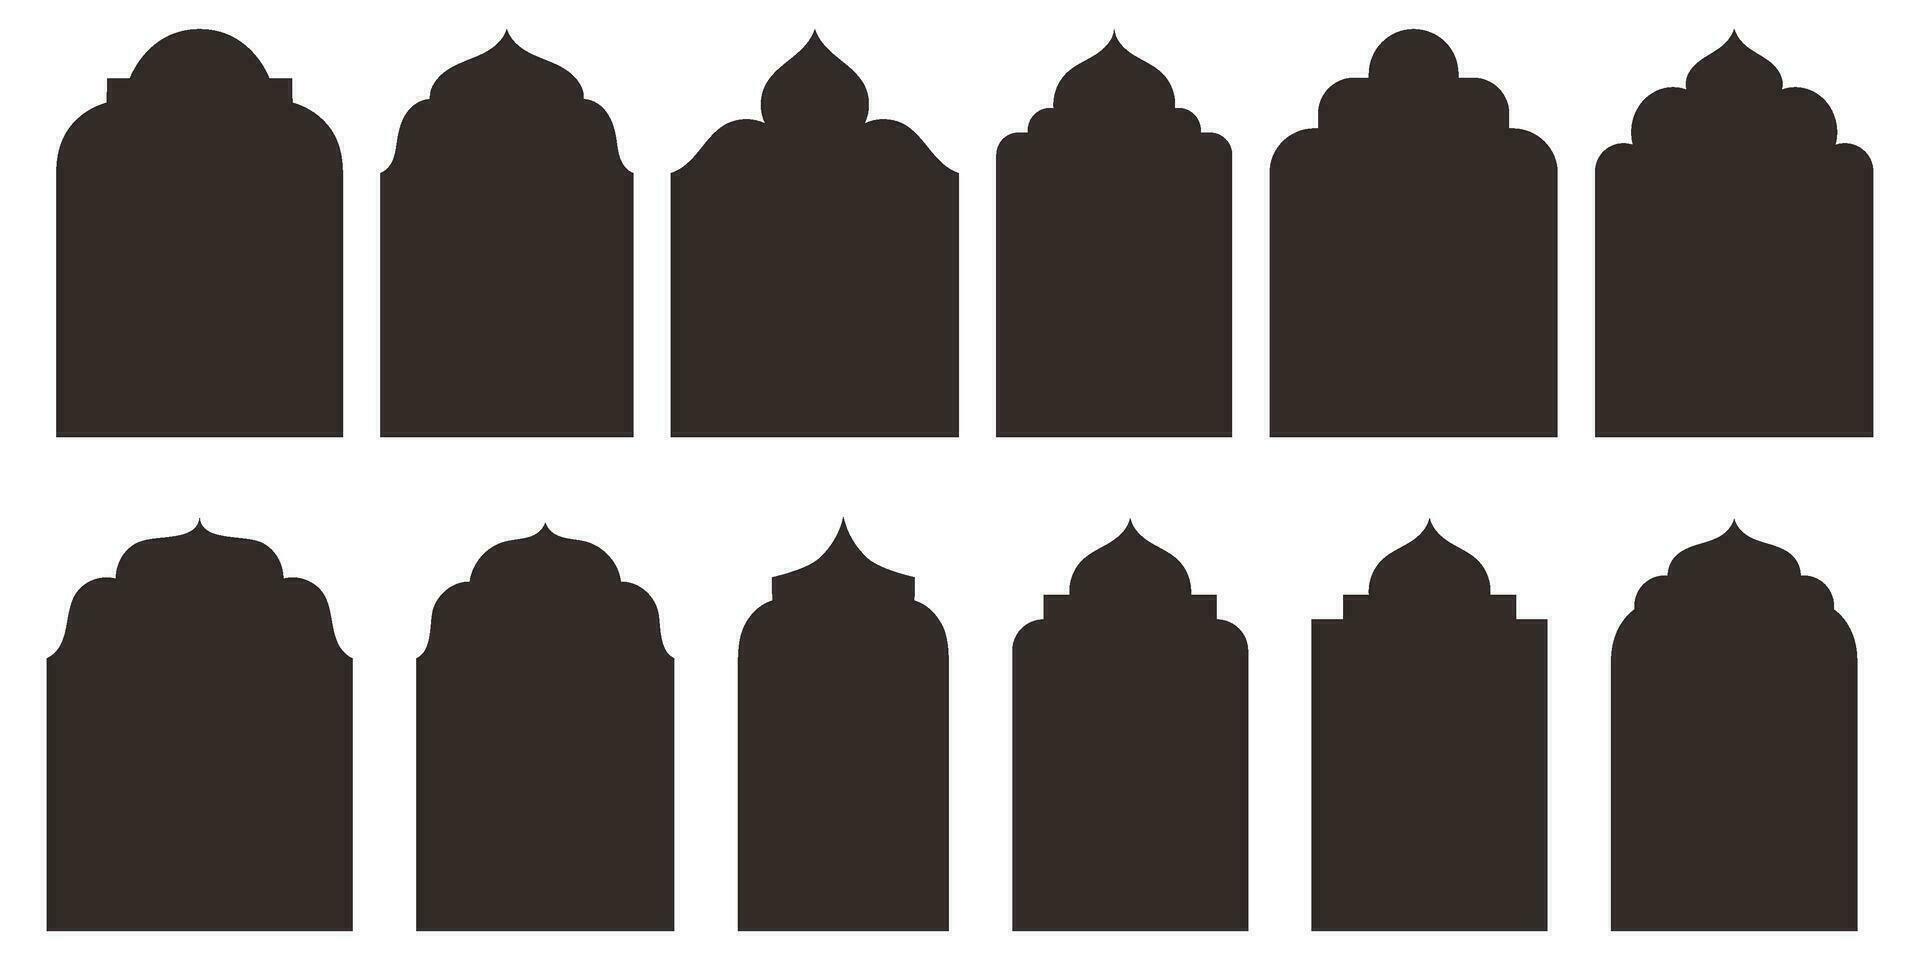 Exquisito islámico oriental puertas y arcos silueta forma recopilación. auténtico Arábica y musulmán arquitectónico marcos tradicional y oriental diseño elementos. vector